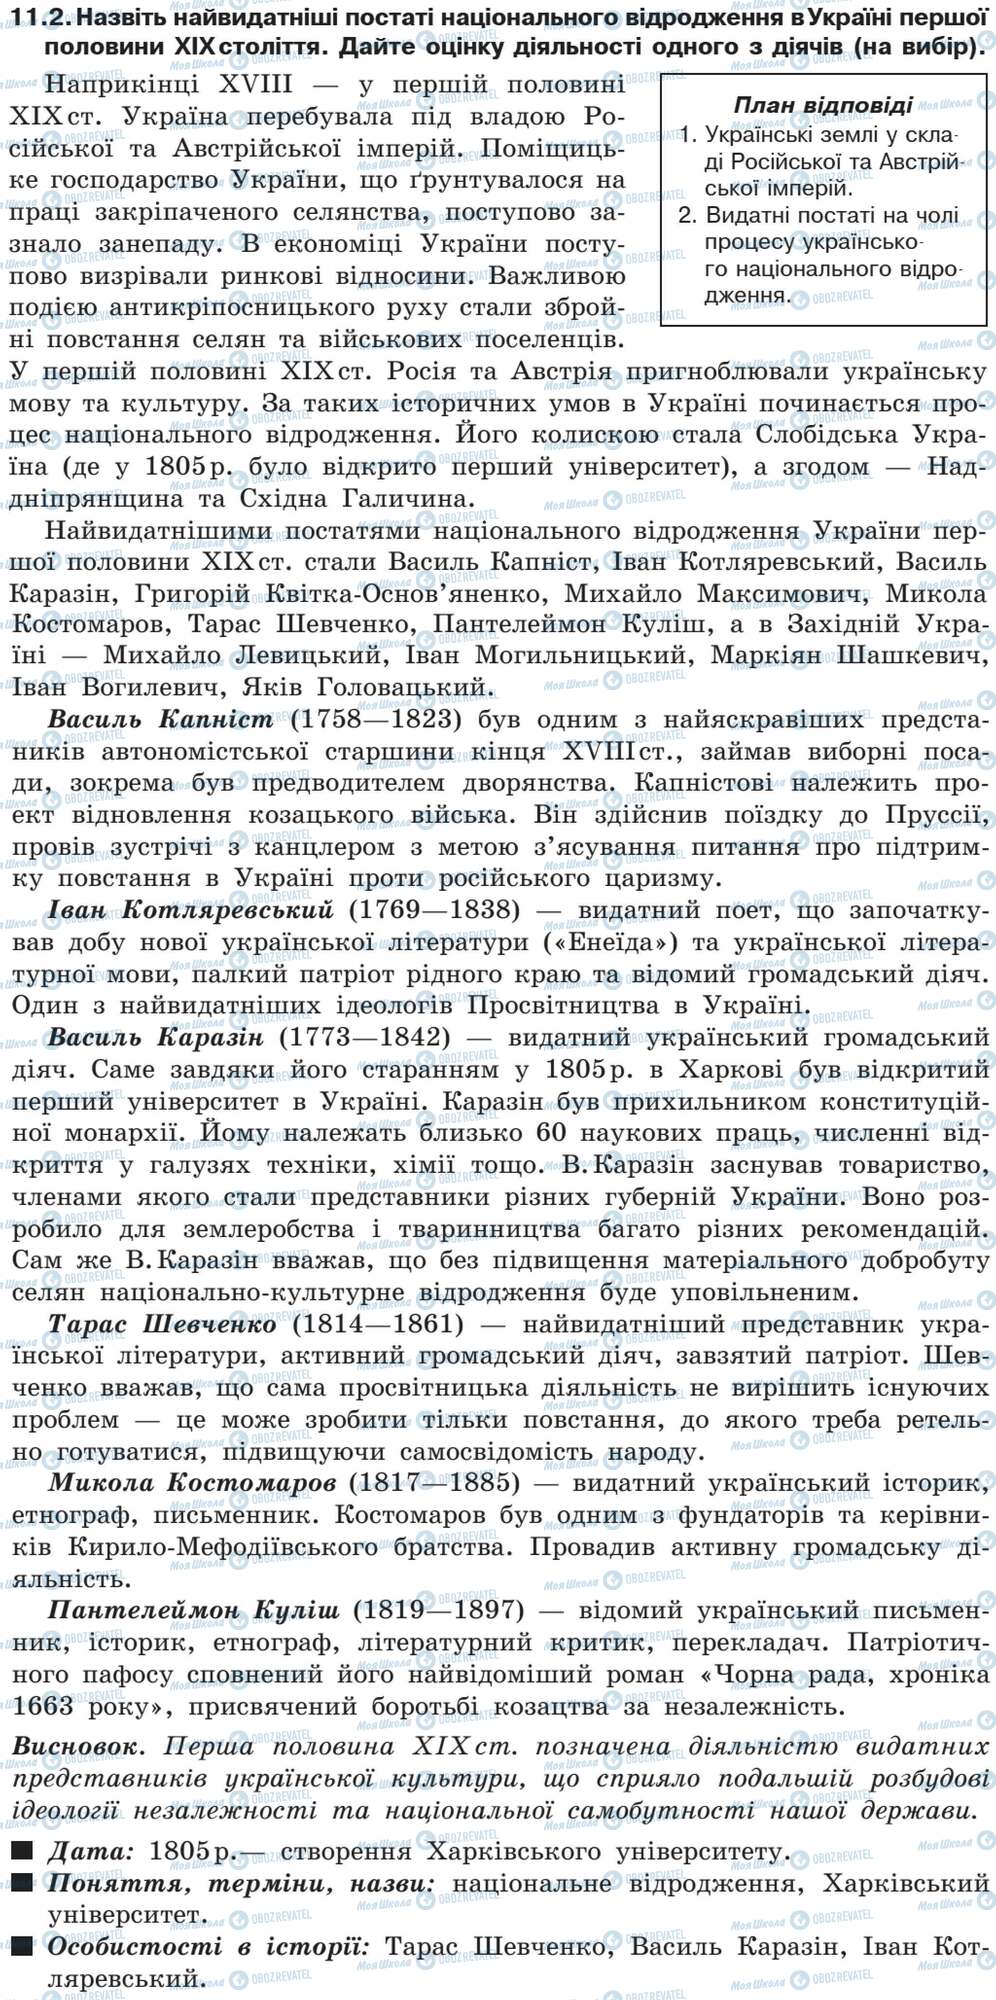 ДПА История Украины 9 класс страница 11.2